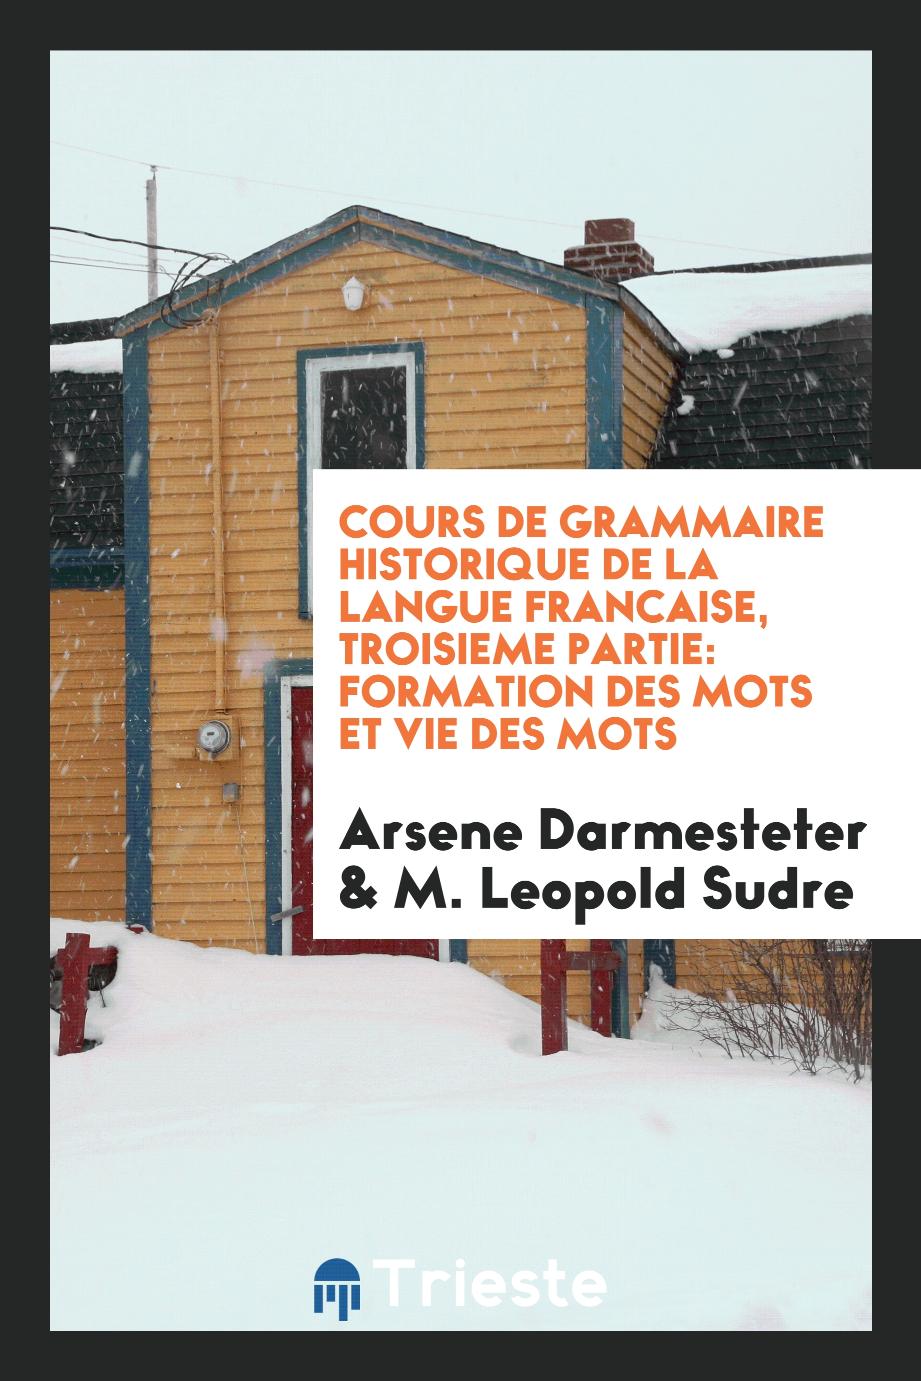 Cours de grammaire historique de la langue francaise, troisieme partie: formation des mots et vie des mots